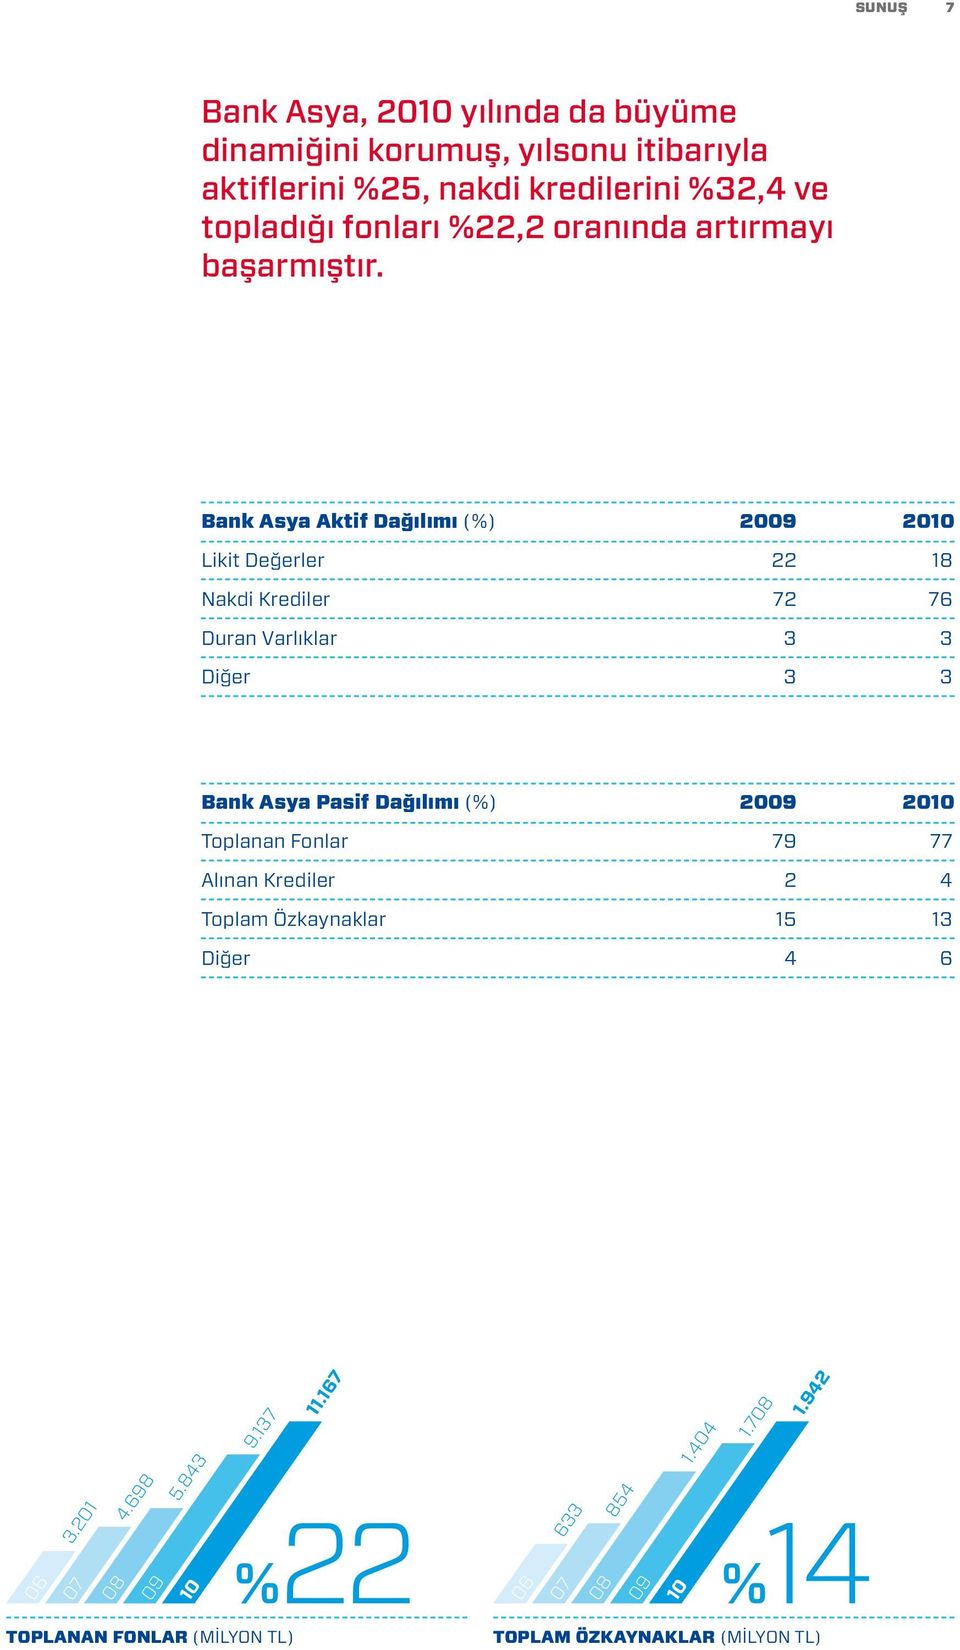 Bank Asya Aktif Dağılımı (%) 2009 2010 Likit Değerler 22 18 Nakdi Krediler 72 76 Duran Varlıklar 3 3 Diğer 3 3 Bank Asya Pasif Dağılımı